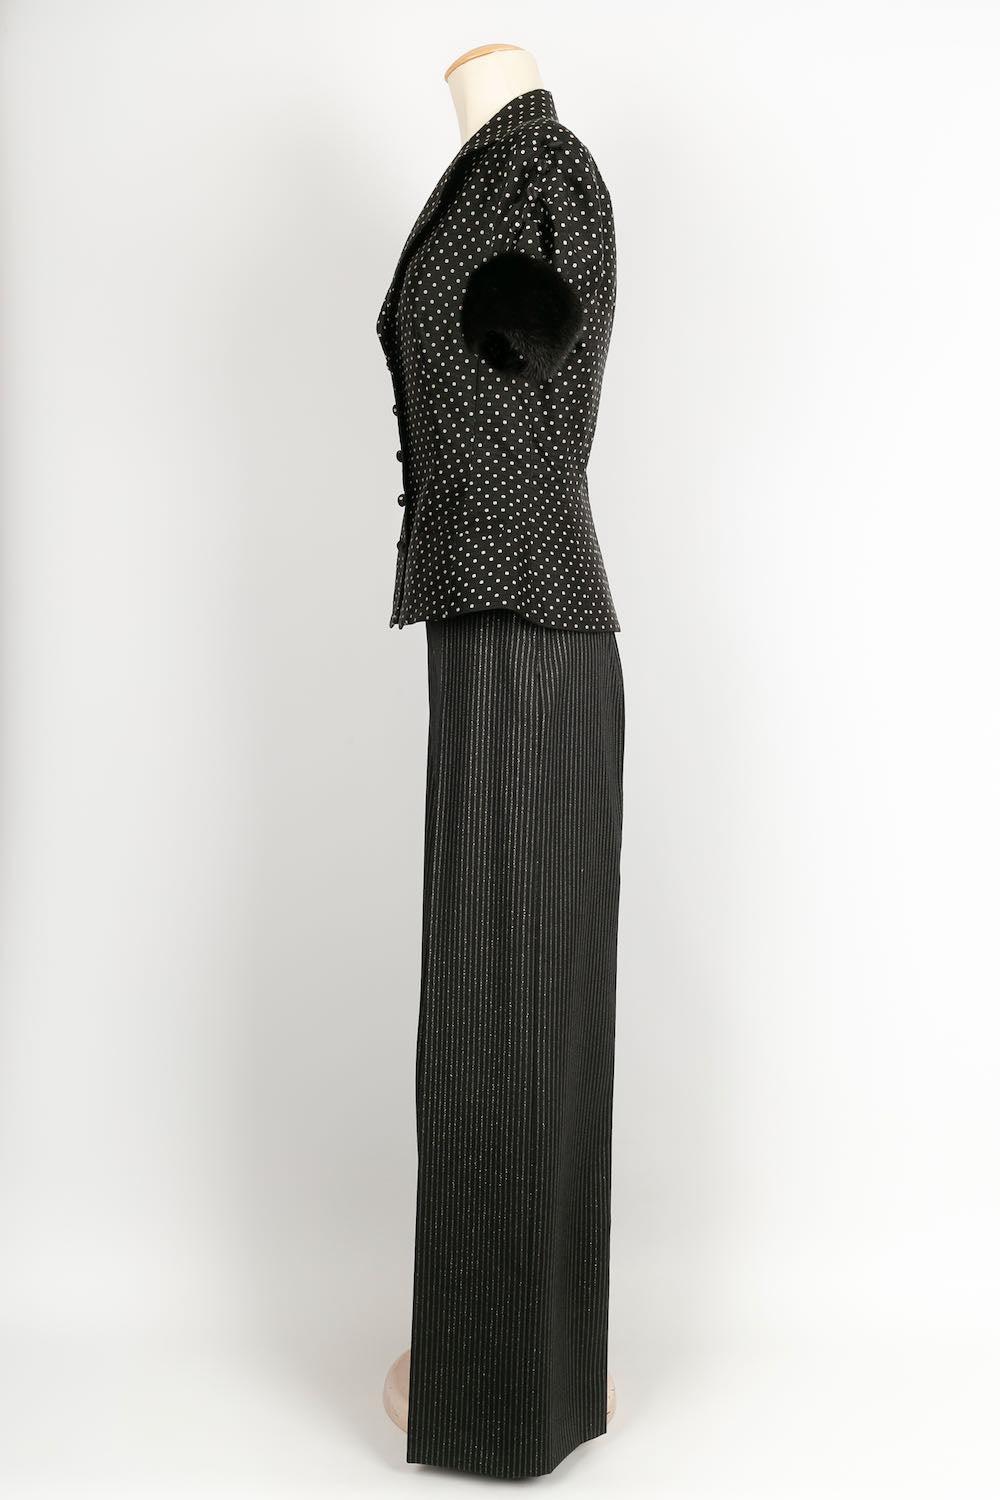 Dior -(Made in Italy) Anzug aus Seide und Wolle mit Nerzbesatz. Größenangabe 38FR für die Hose und 40FR für das Oberteil.

Zusätzliche Informationen: 

Abmessungen: Oberteil: Schultern: 40 cm, Brust: 42 cm, Taille: 38 cm, Länge: 58 cm 
Hose: Taille: